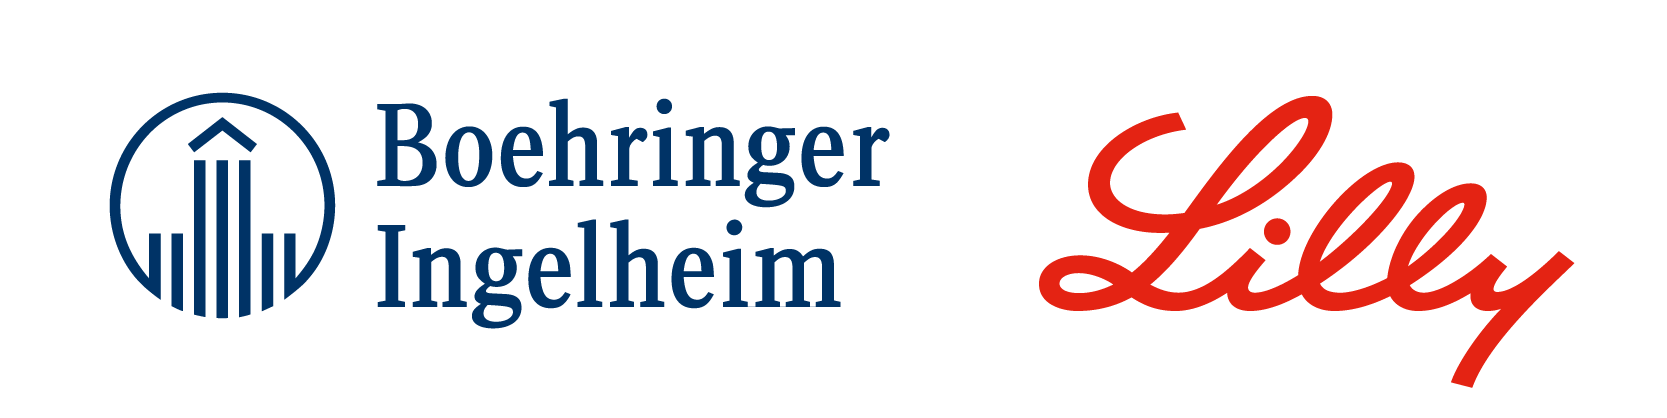 Boehringer Ingelheim & Lilly 